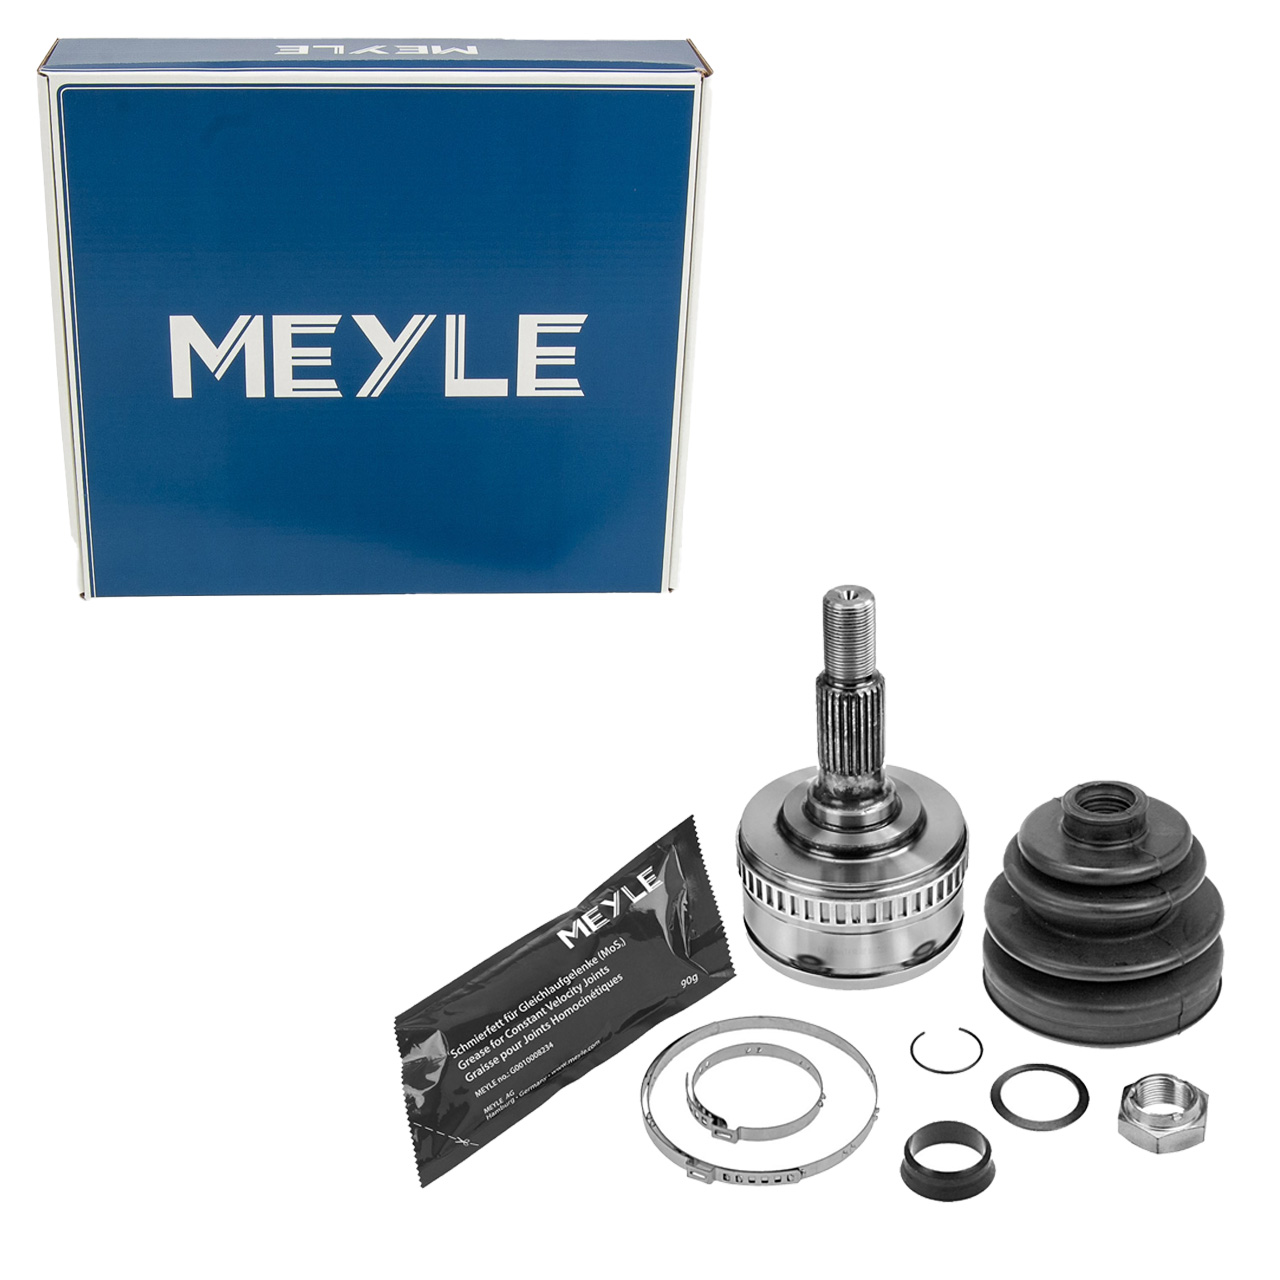 MEYLE 0144980001 Antriebsgelenk MERCECES-BENZ V-Klasse Vito W638 M111 OM601 radseitig